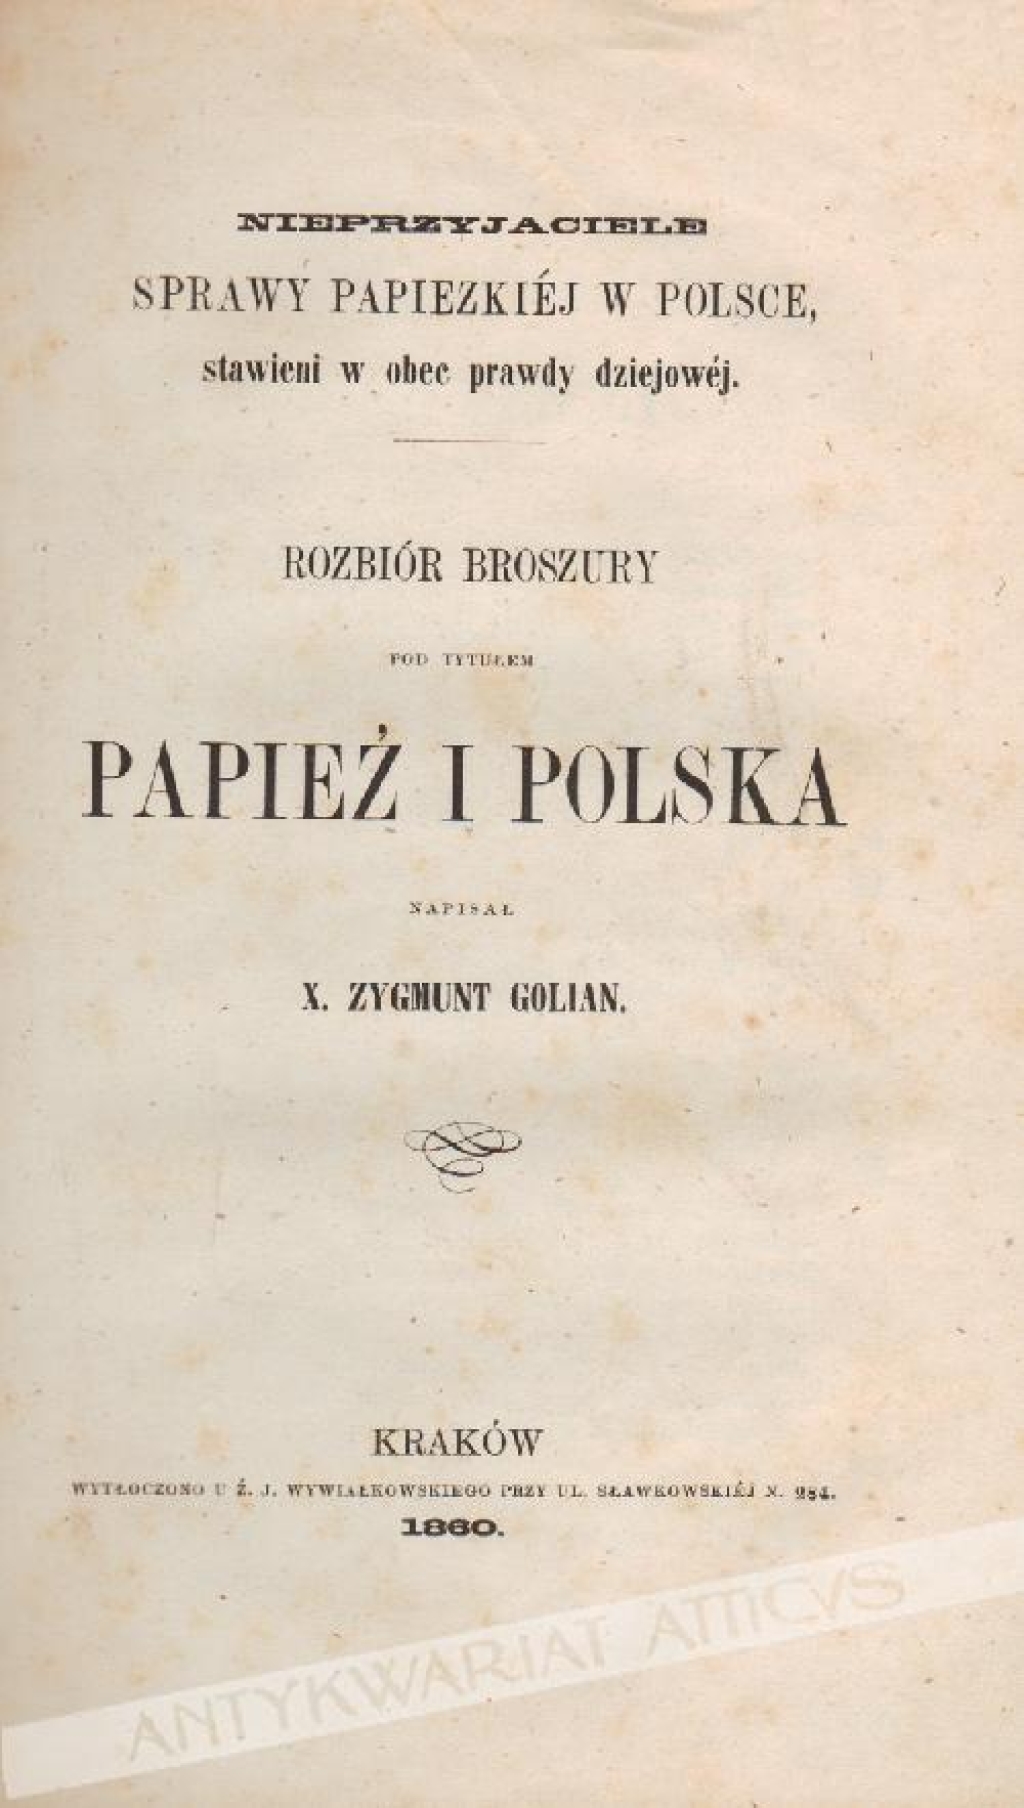 Nieprzyjaciele sprawy papiezkiej  w Polsce, stawieni wobec prawdy dziejowej. Rozbiór broszury pod tytułem Papież i Polska